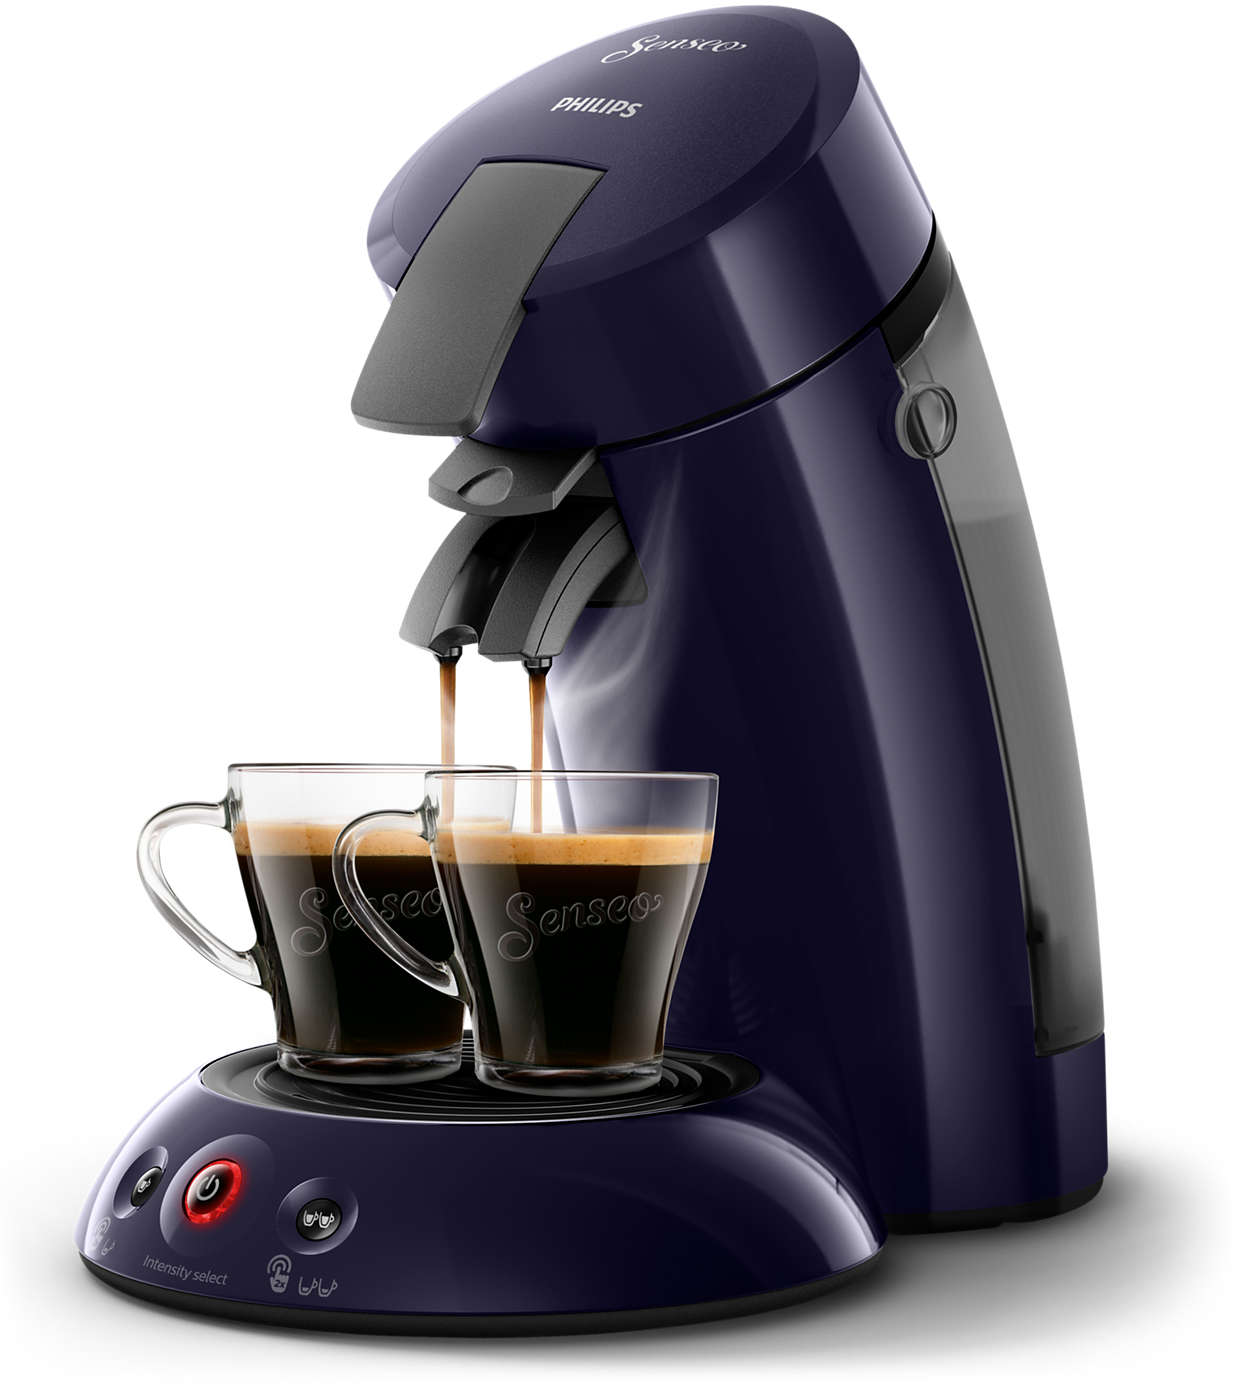 40 x 23 cm accessoire de machine à café Tapis pour machine à café Senseo – Plateau coulissant en nylon compatible avec la machine à café Senseo HD6554/68 noir. 